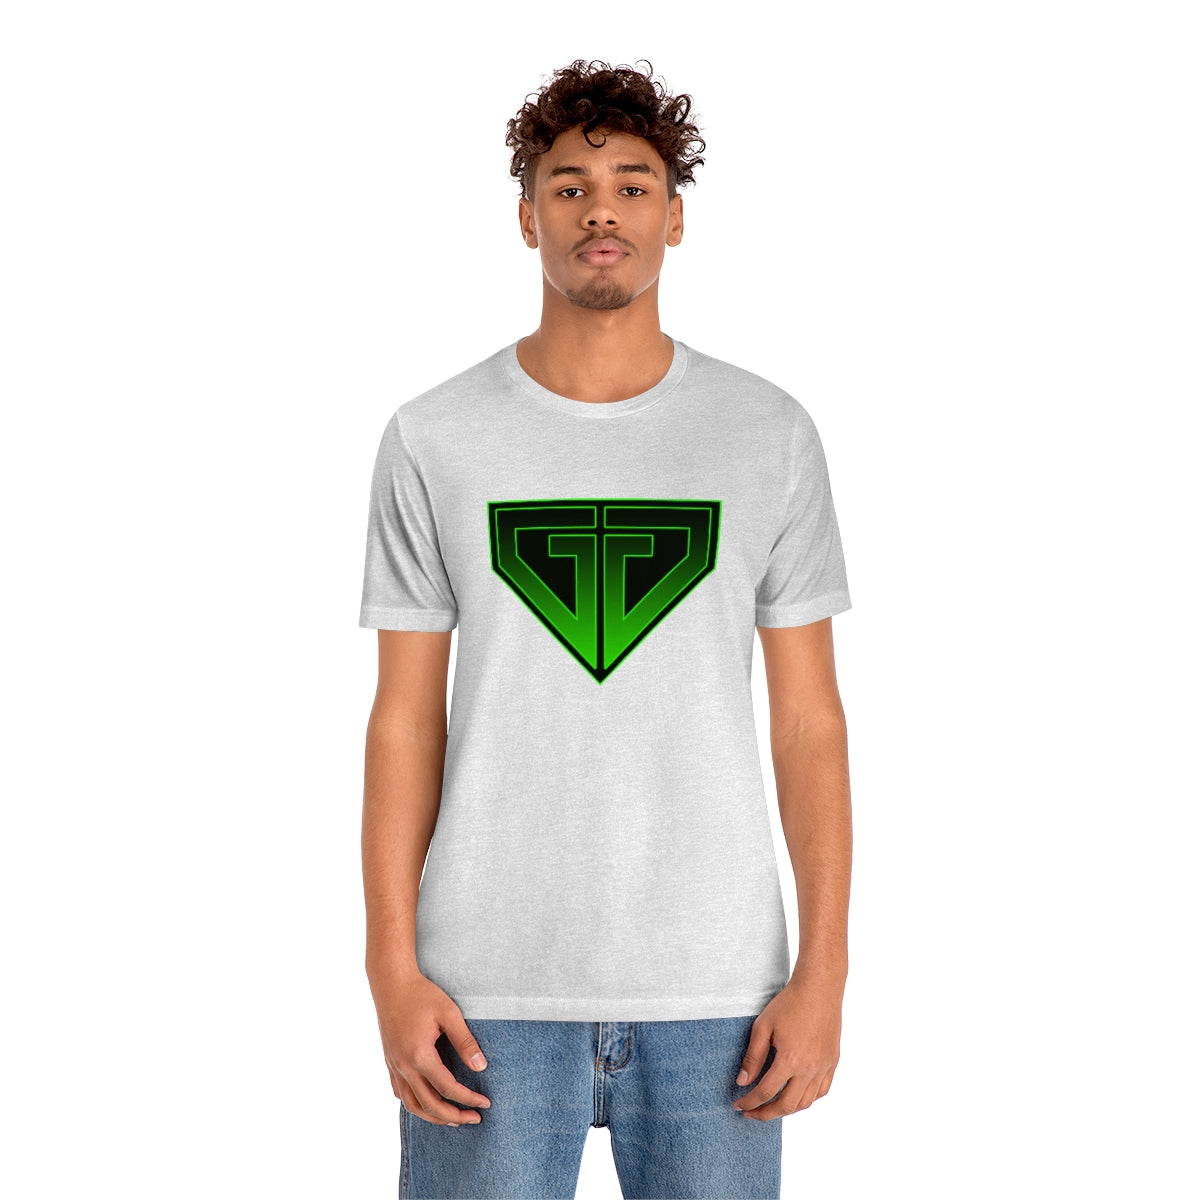 JJ Green Giant Unisex T-shirt